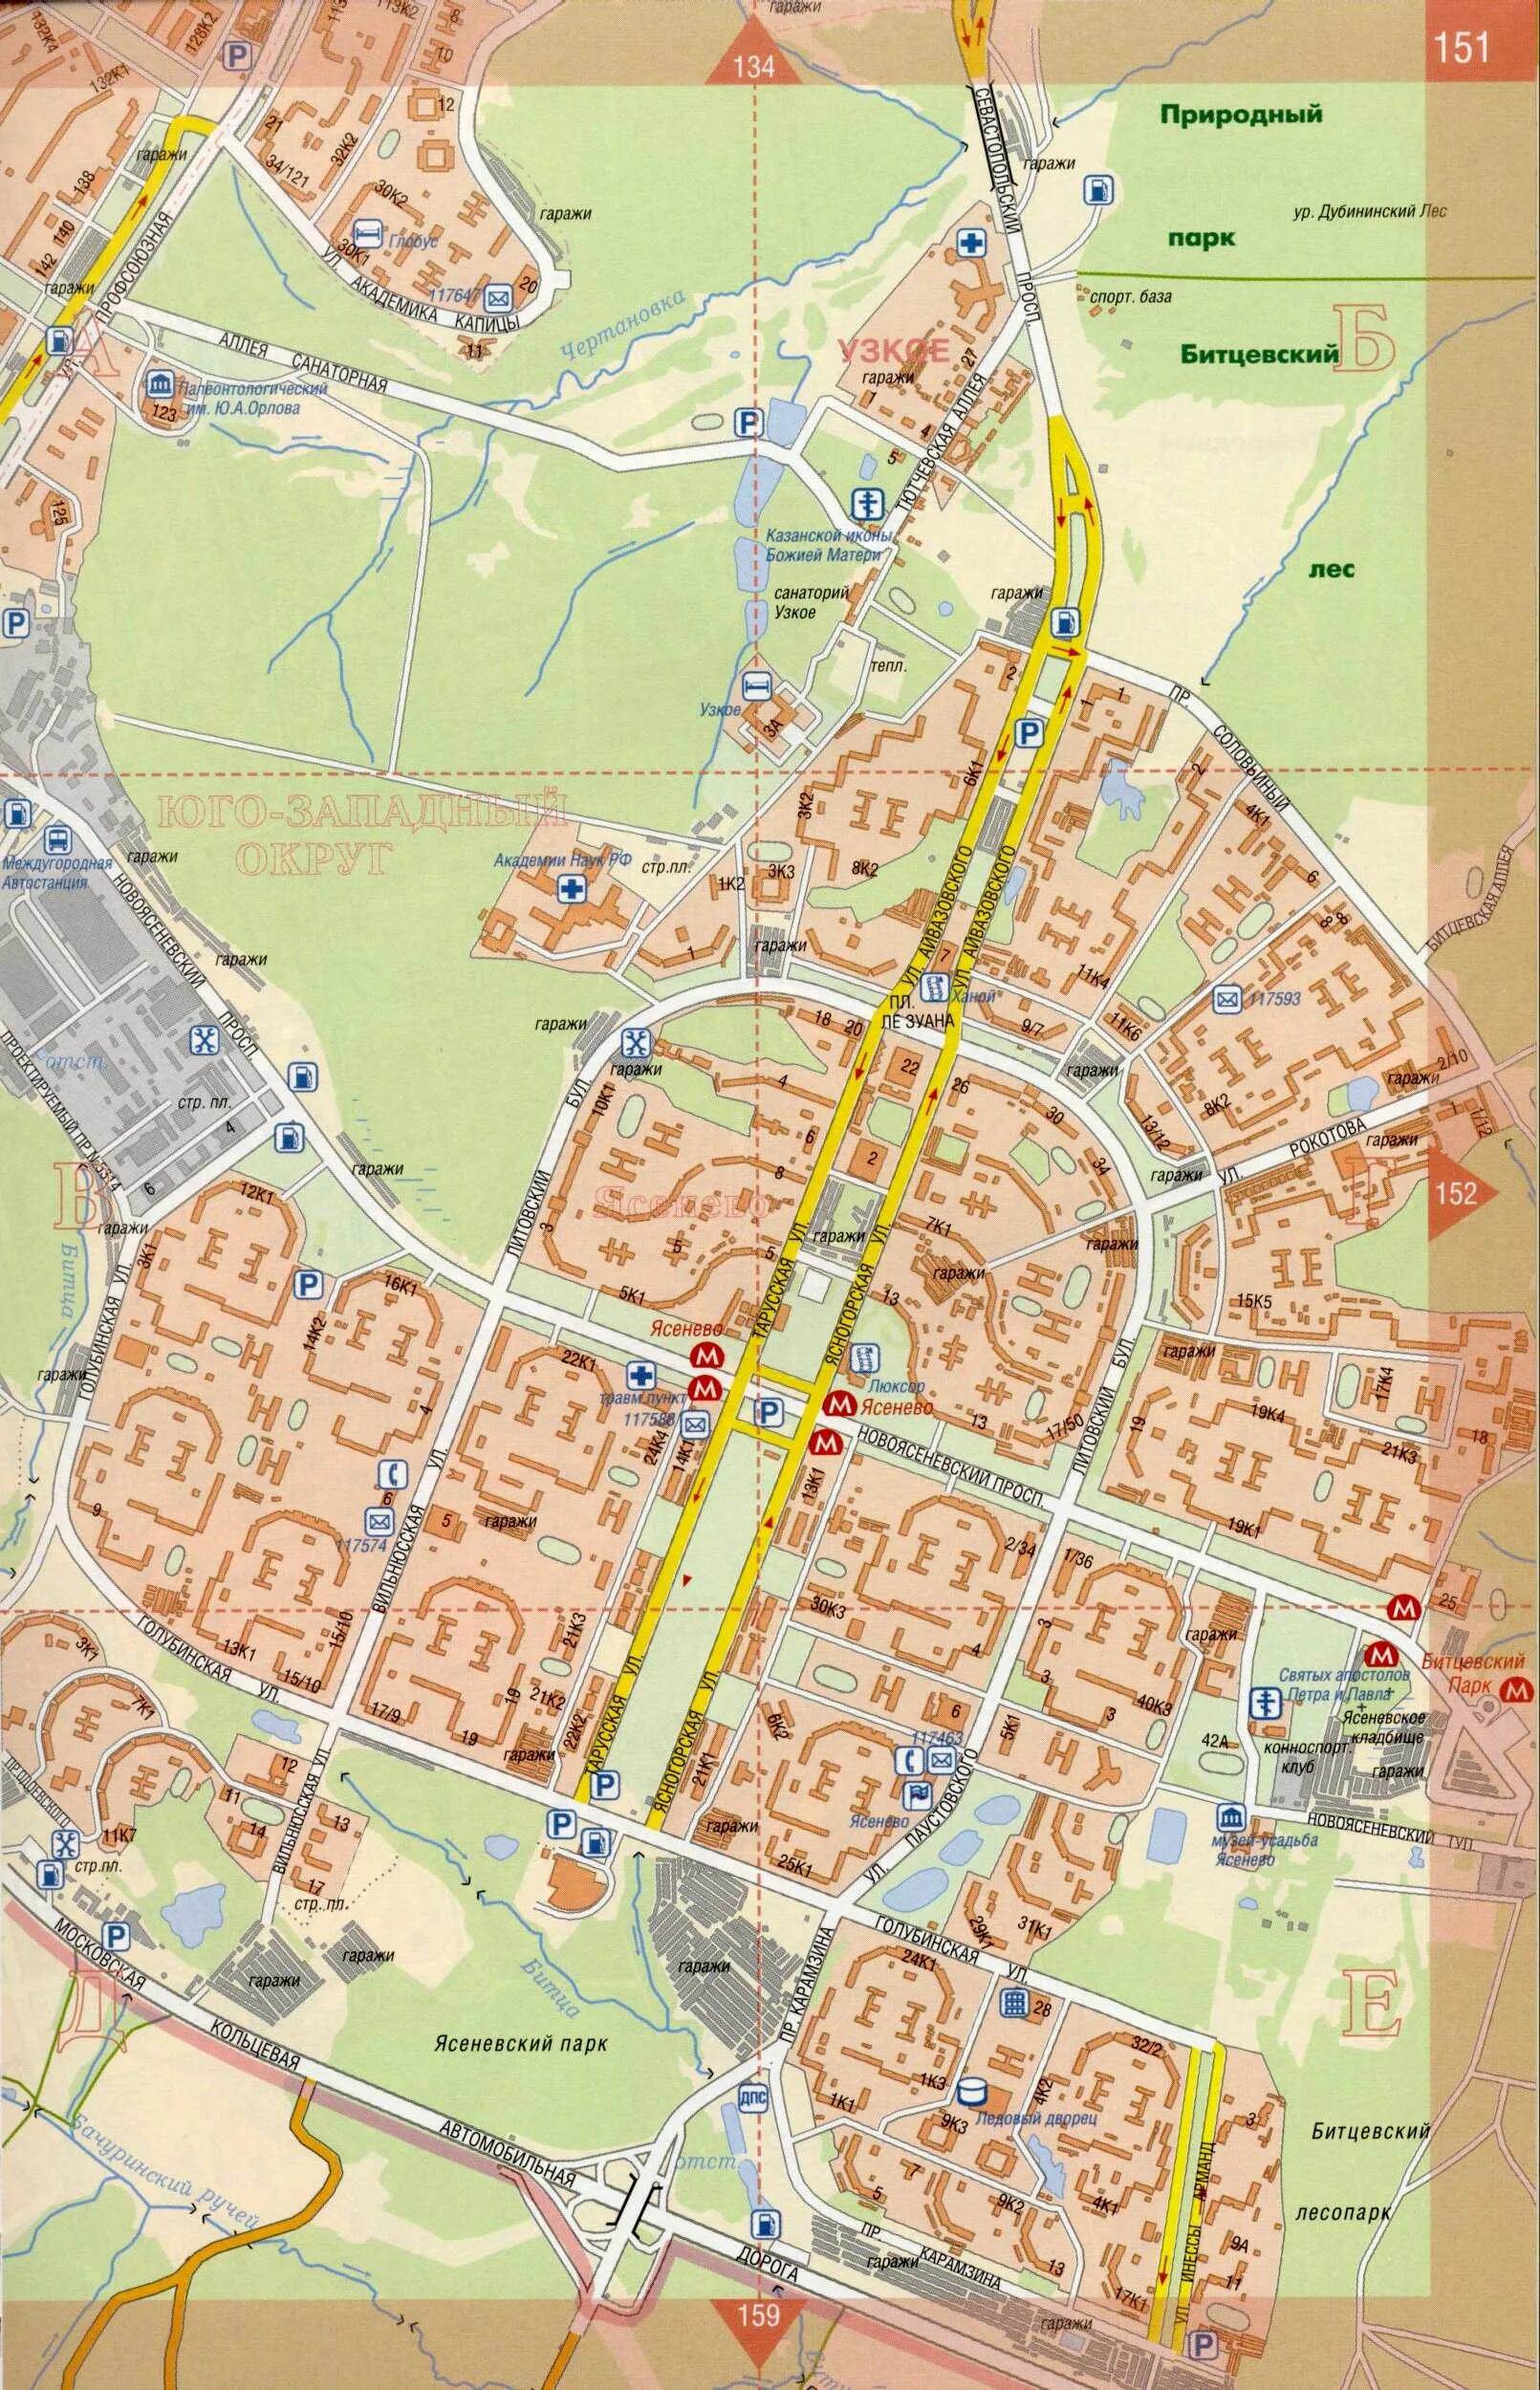 Ясенево на карте Москвы. Район Ясенево на карте Москвы. Карта микрорайонов Ясенево. Район Ясенево на карте с улицами. Схема ясенево